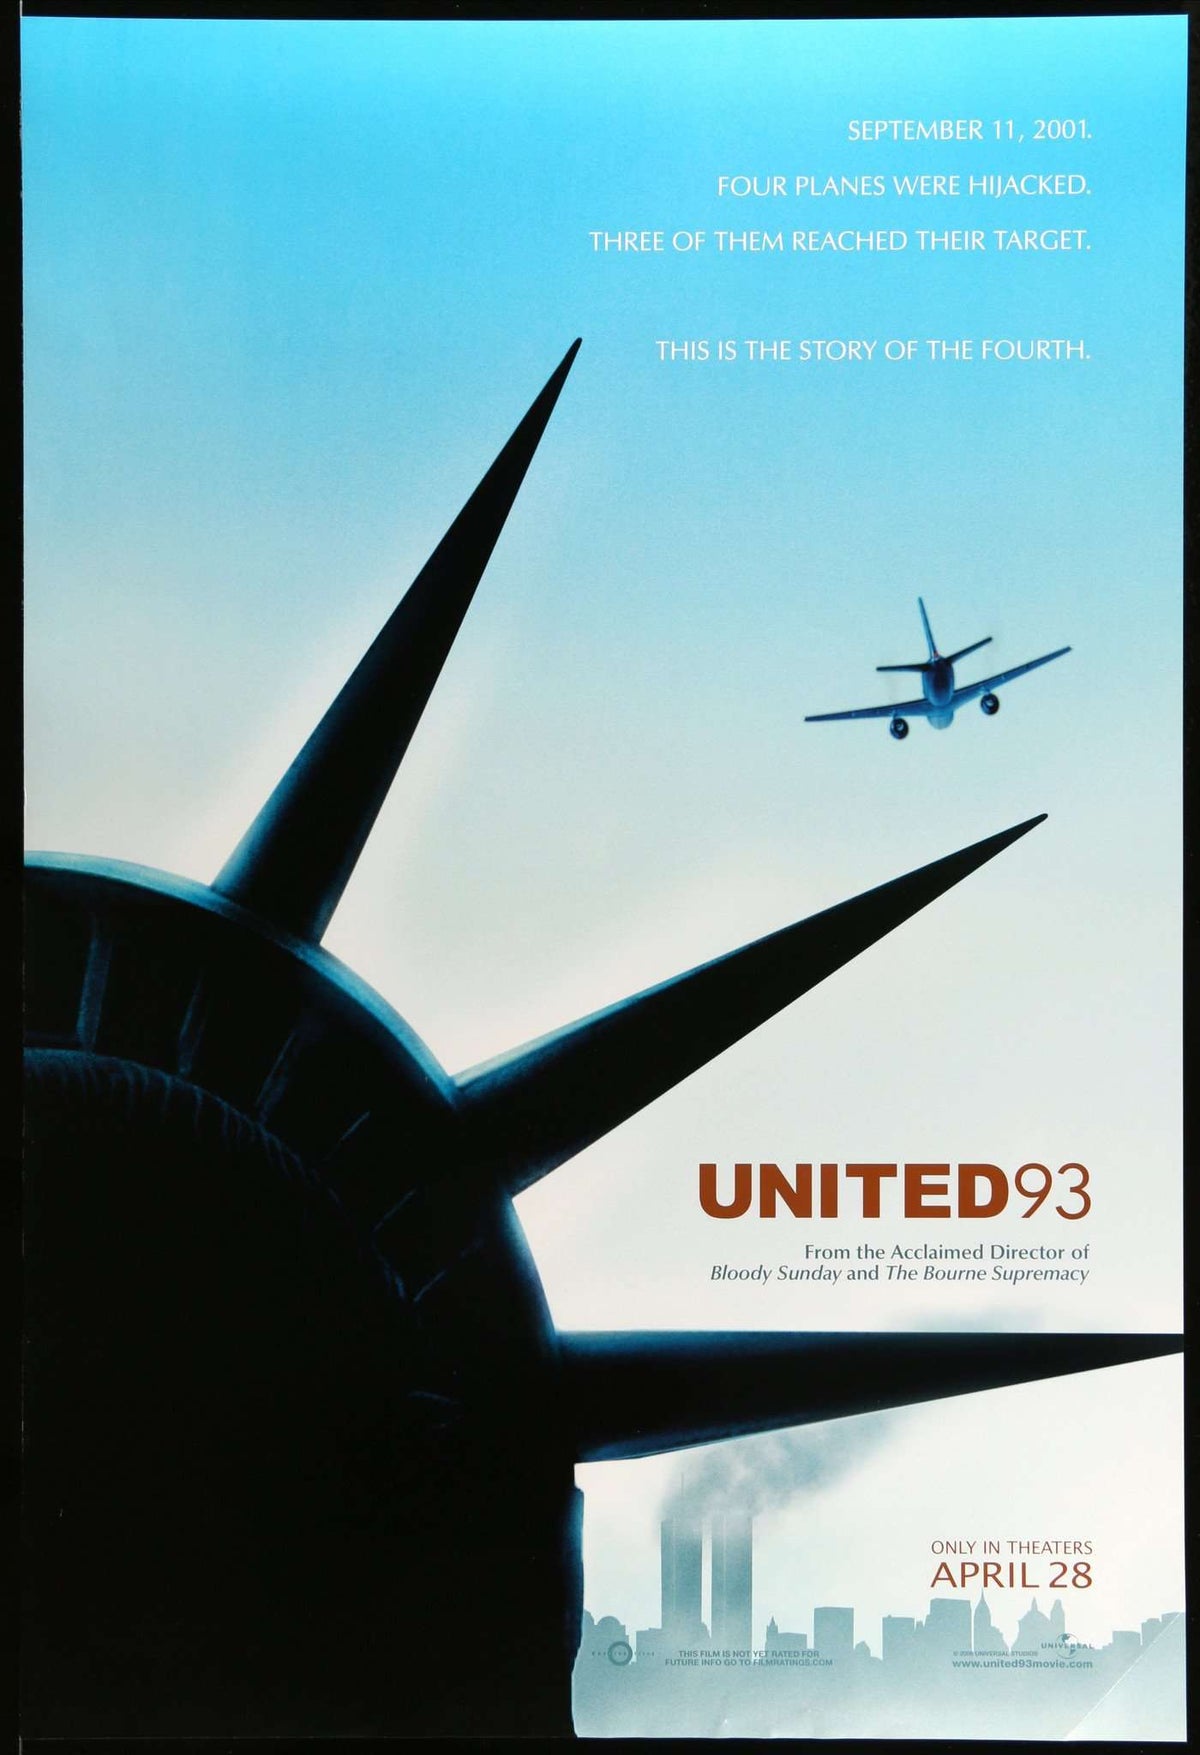 United 93 (2006) original movie poster for sale at Original Film Art